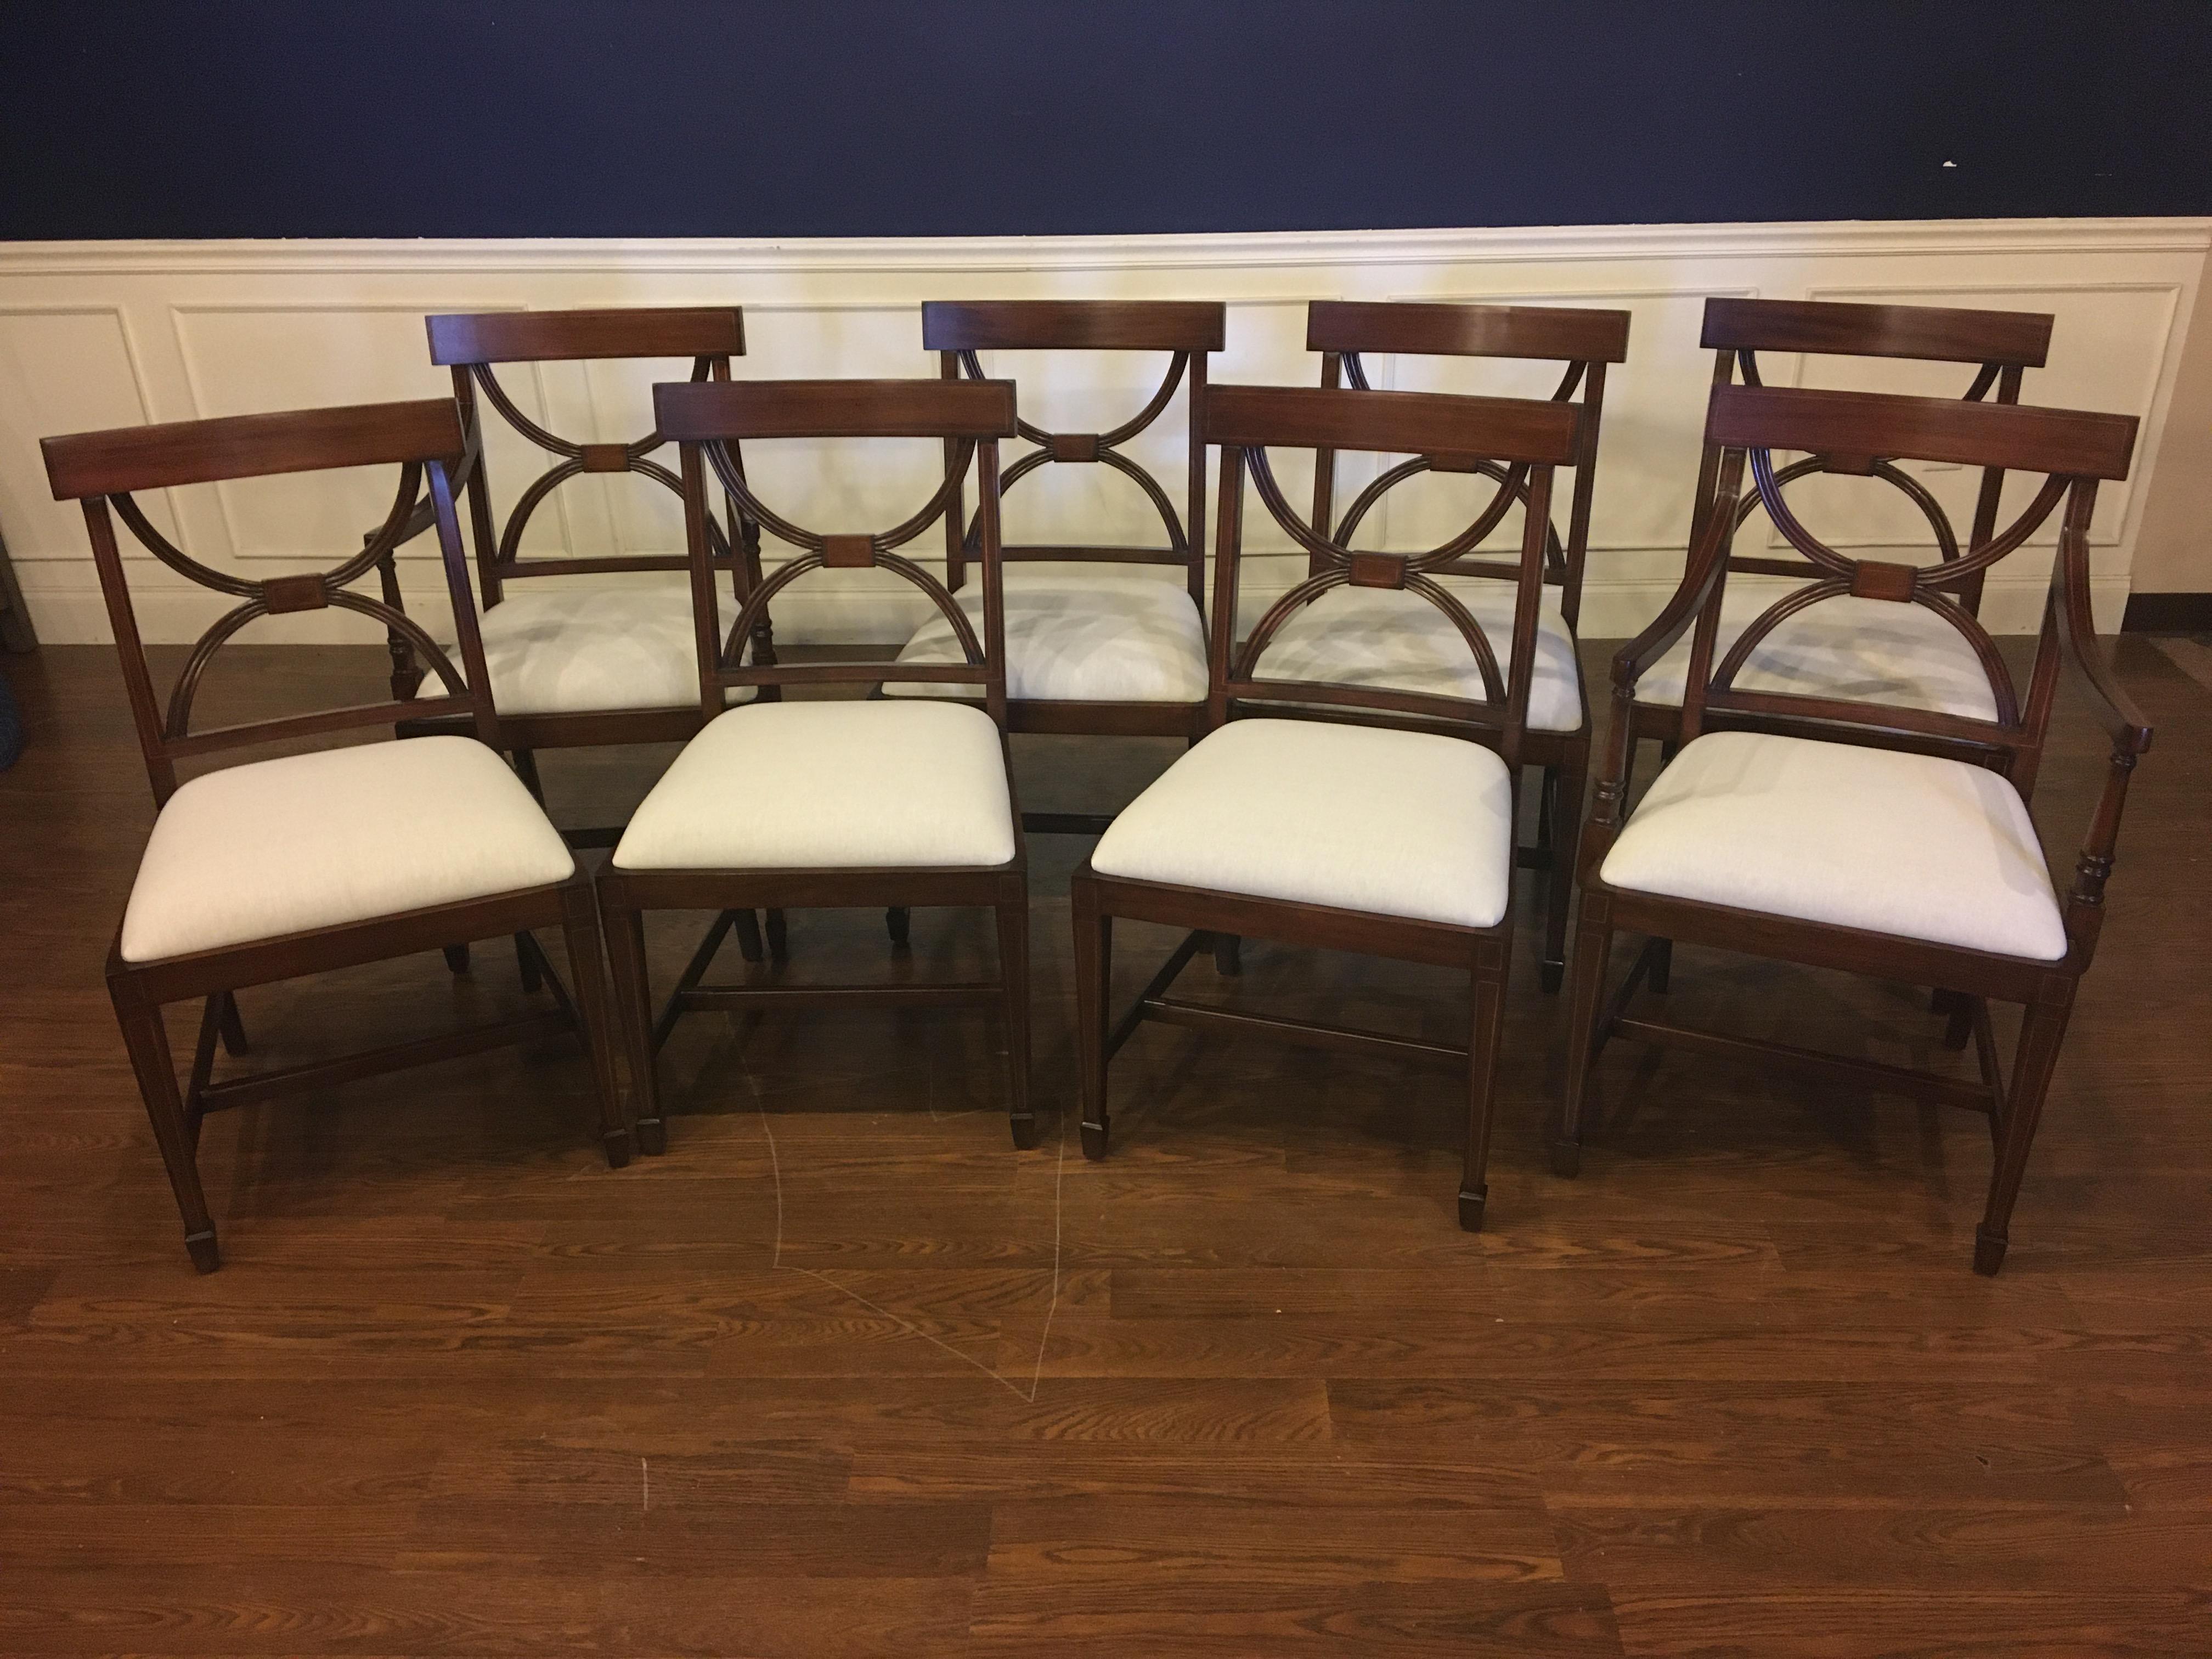 Dies sind neue traditionelle Mahagoni-Esszimmerstühle. Ihr Design wurde von Esszimmerstühlen aus der Regency-Zeit inspiriert. Sie sind im klassischen Adams-Stil gehalten. Sie haben eine schlichte Eleganz mit quadratischen, spitz zulaufenden Beinen